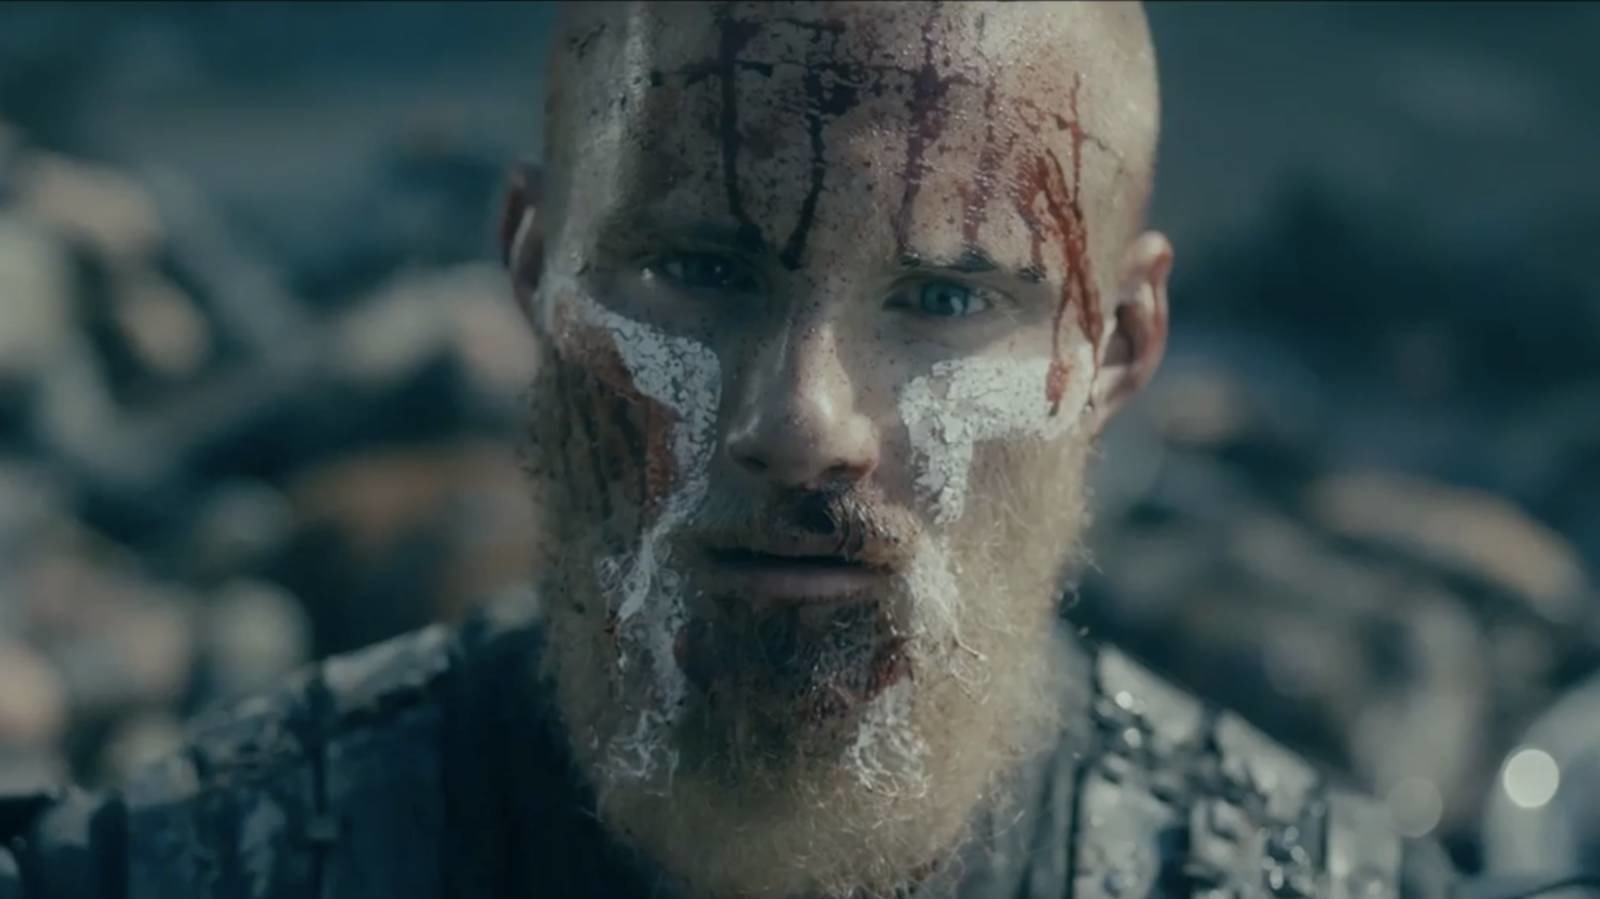 Vikings' Season 2 Spoilers: Did King Horik Kill Ragnar In The